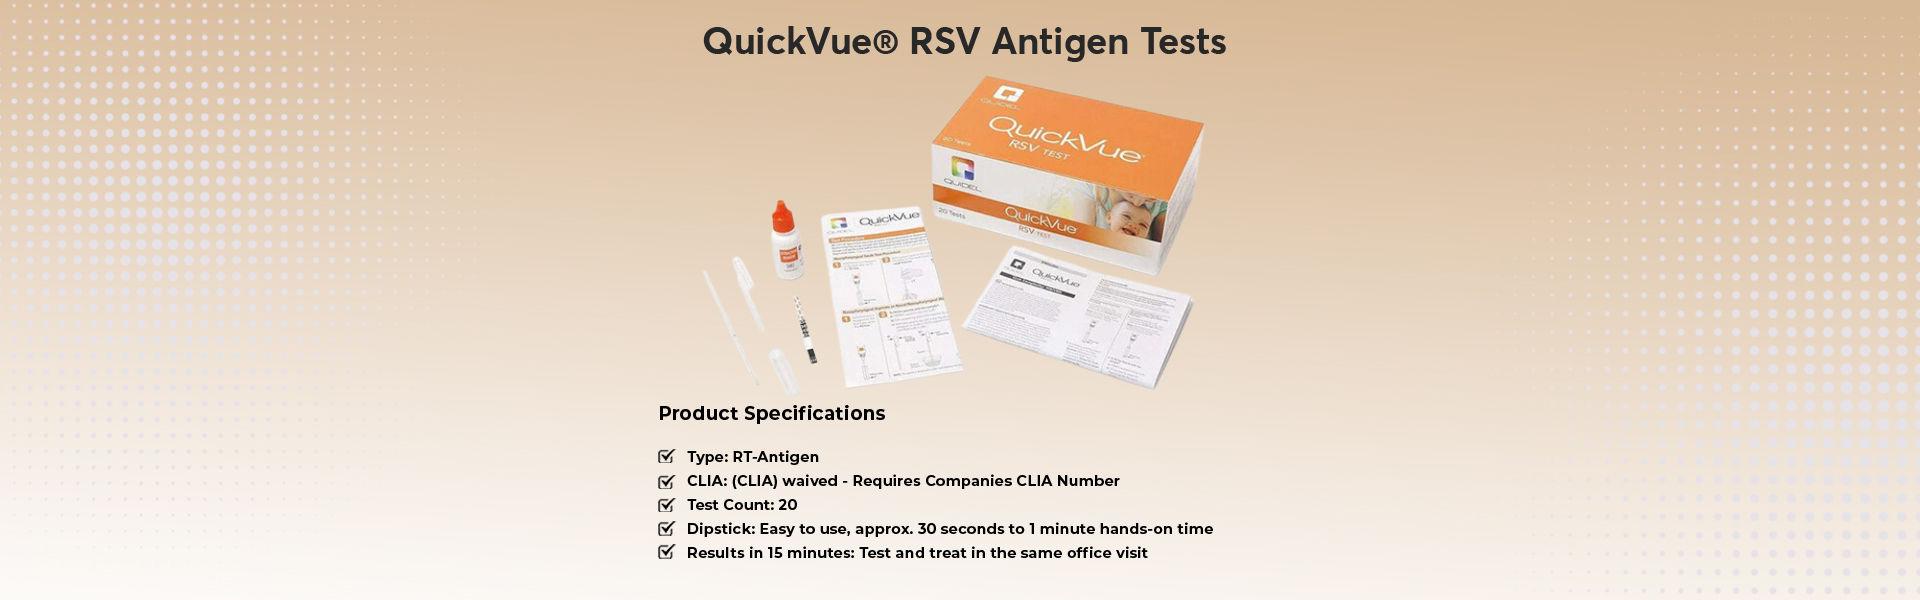 QuickVue®-RSV-Antigen-Tests